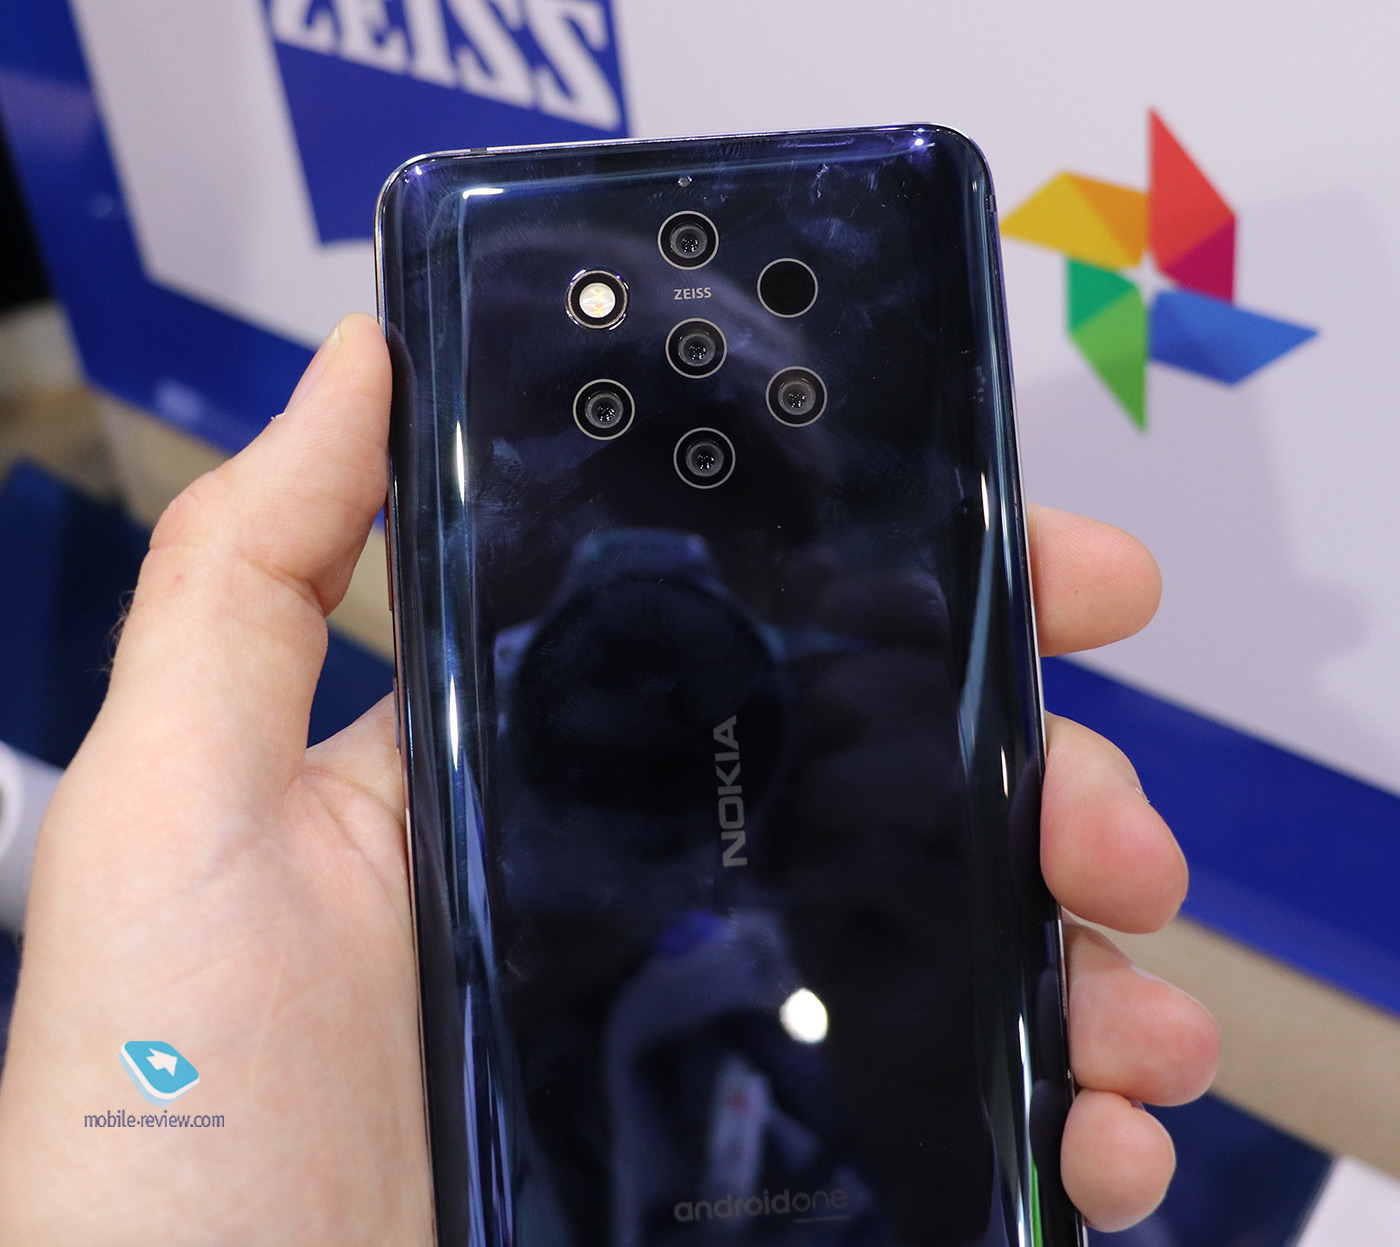 MWC 2019 - разговоры про Huawei, значки у Xiaomi, будущее Nokia